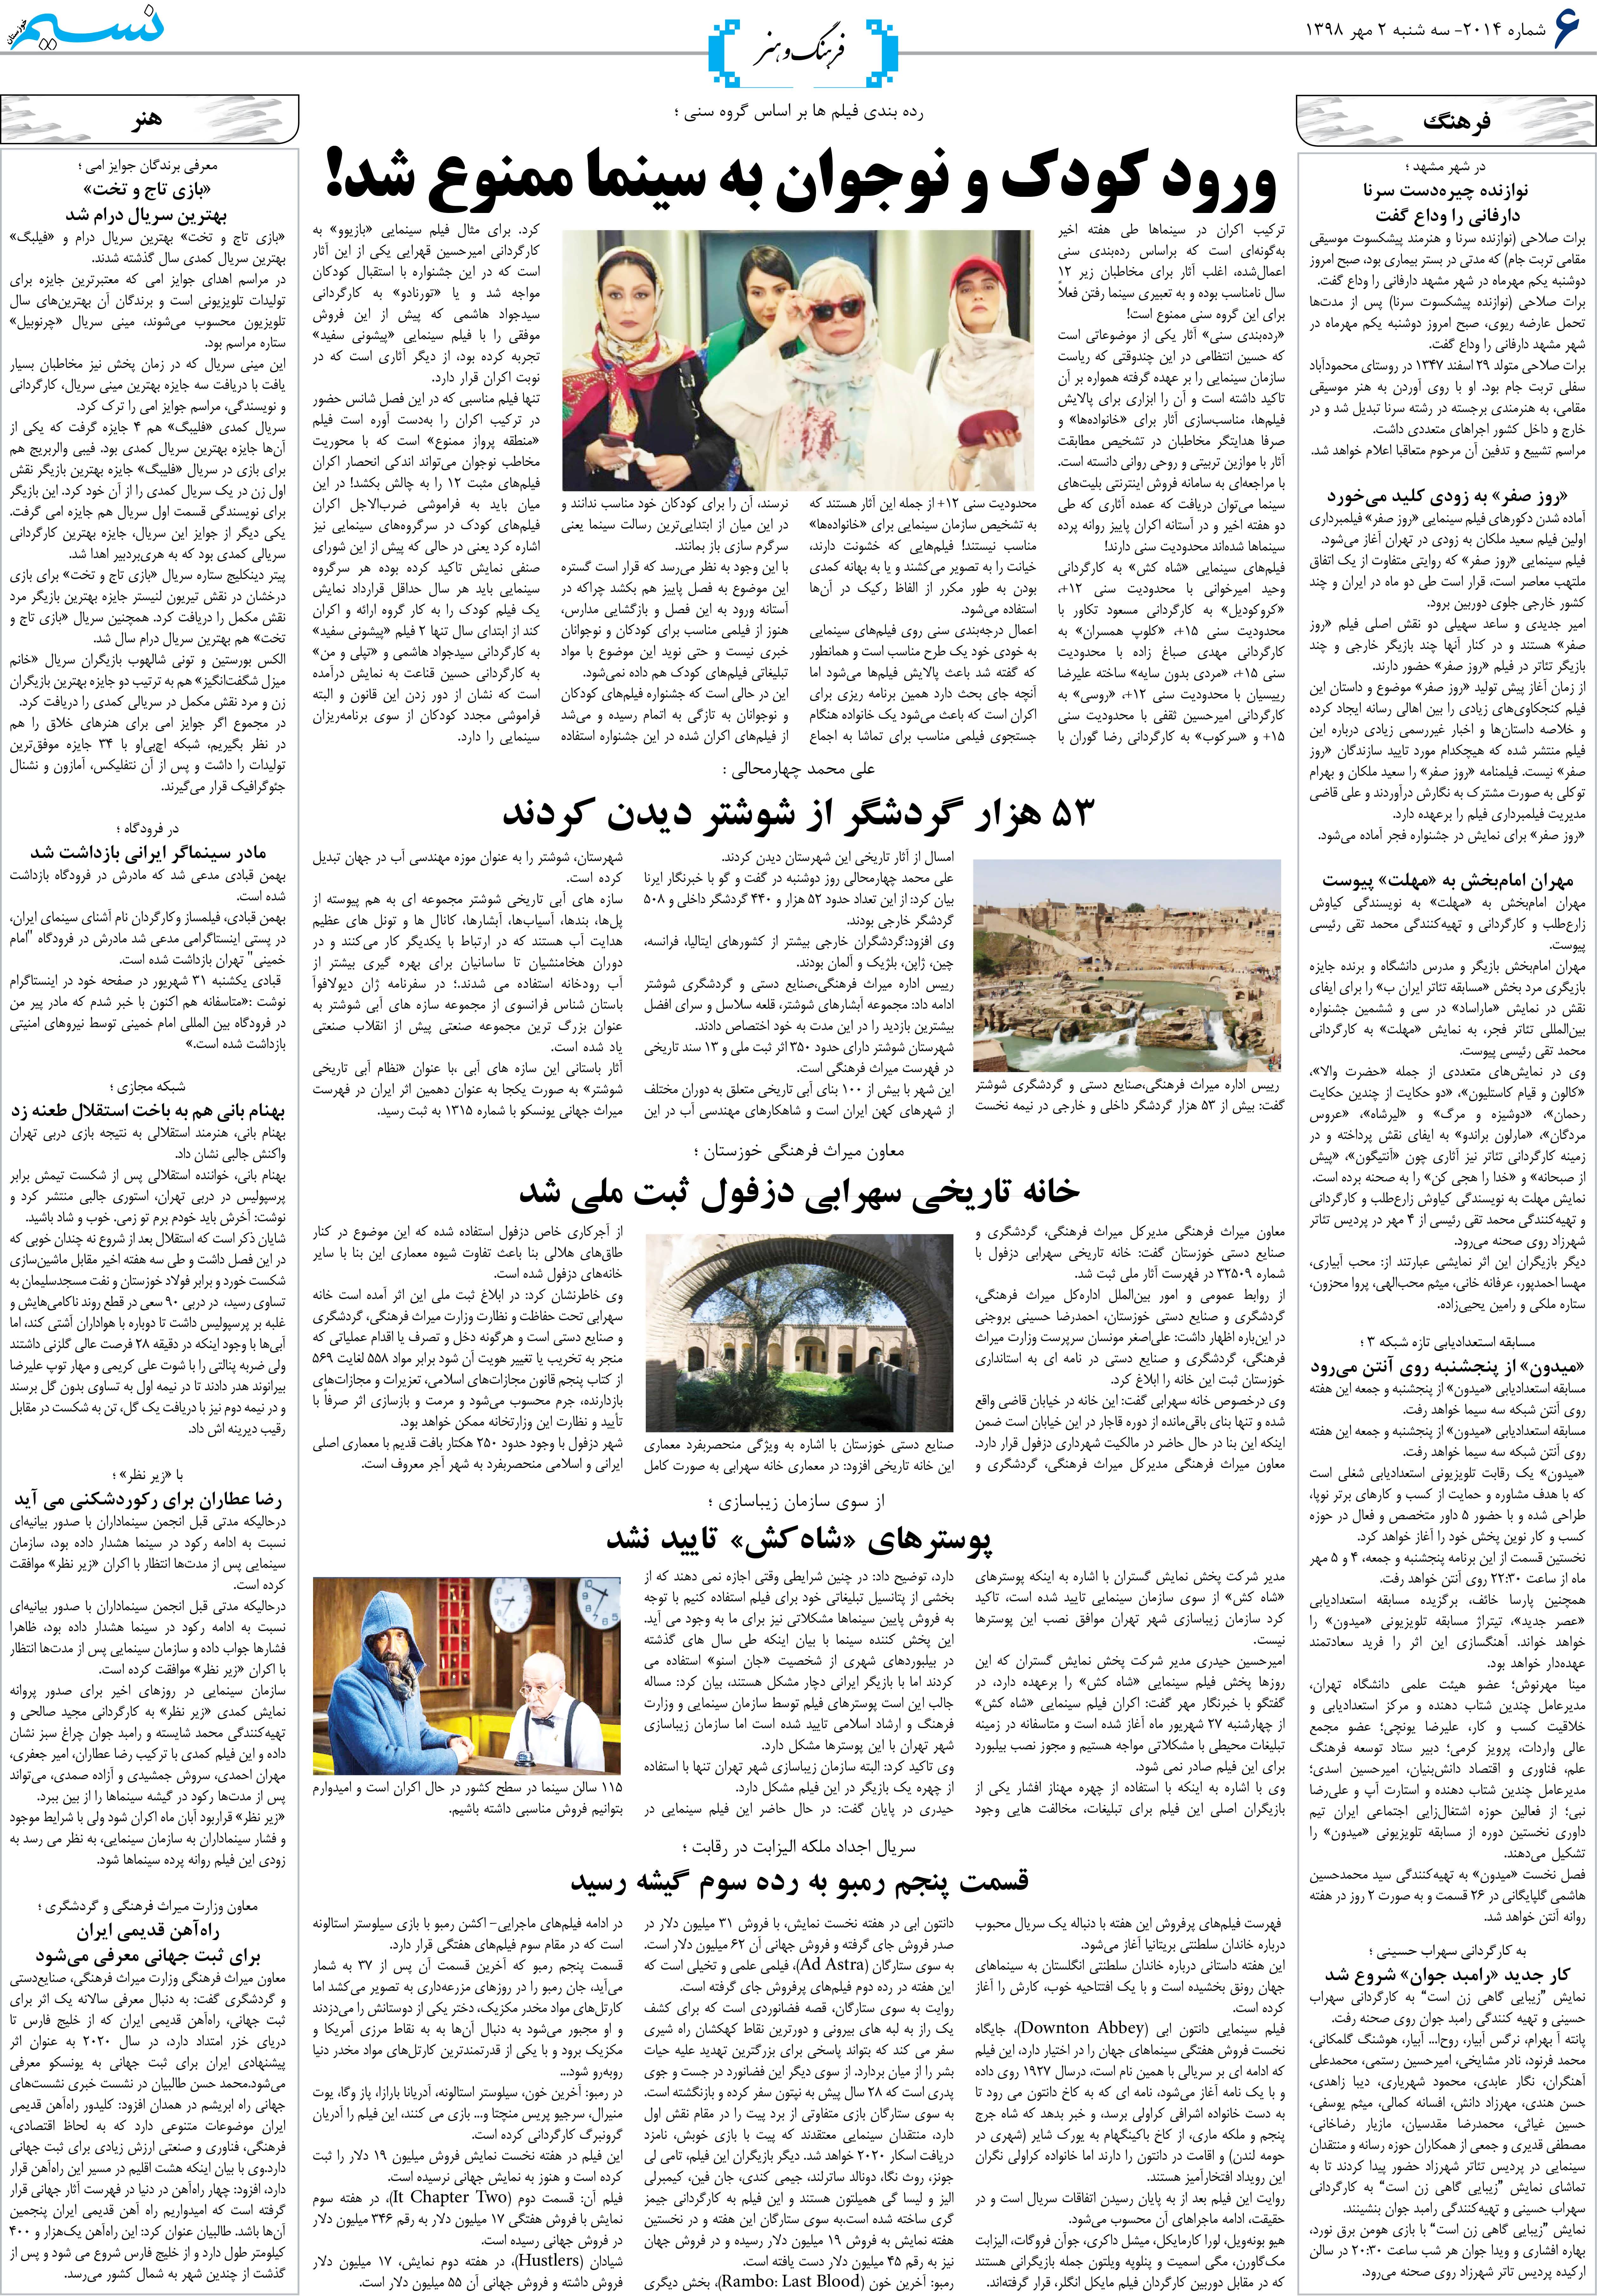 صفحه فرهنگ و هنر روزنامه نسیم شماره 2014